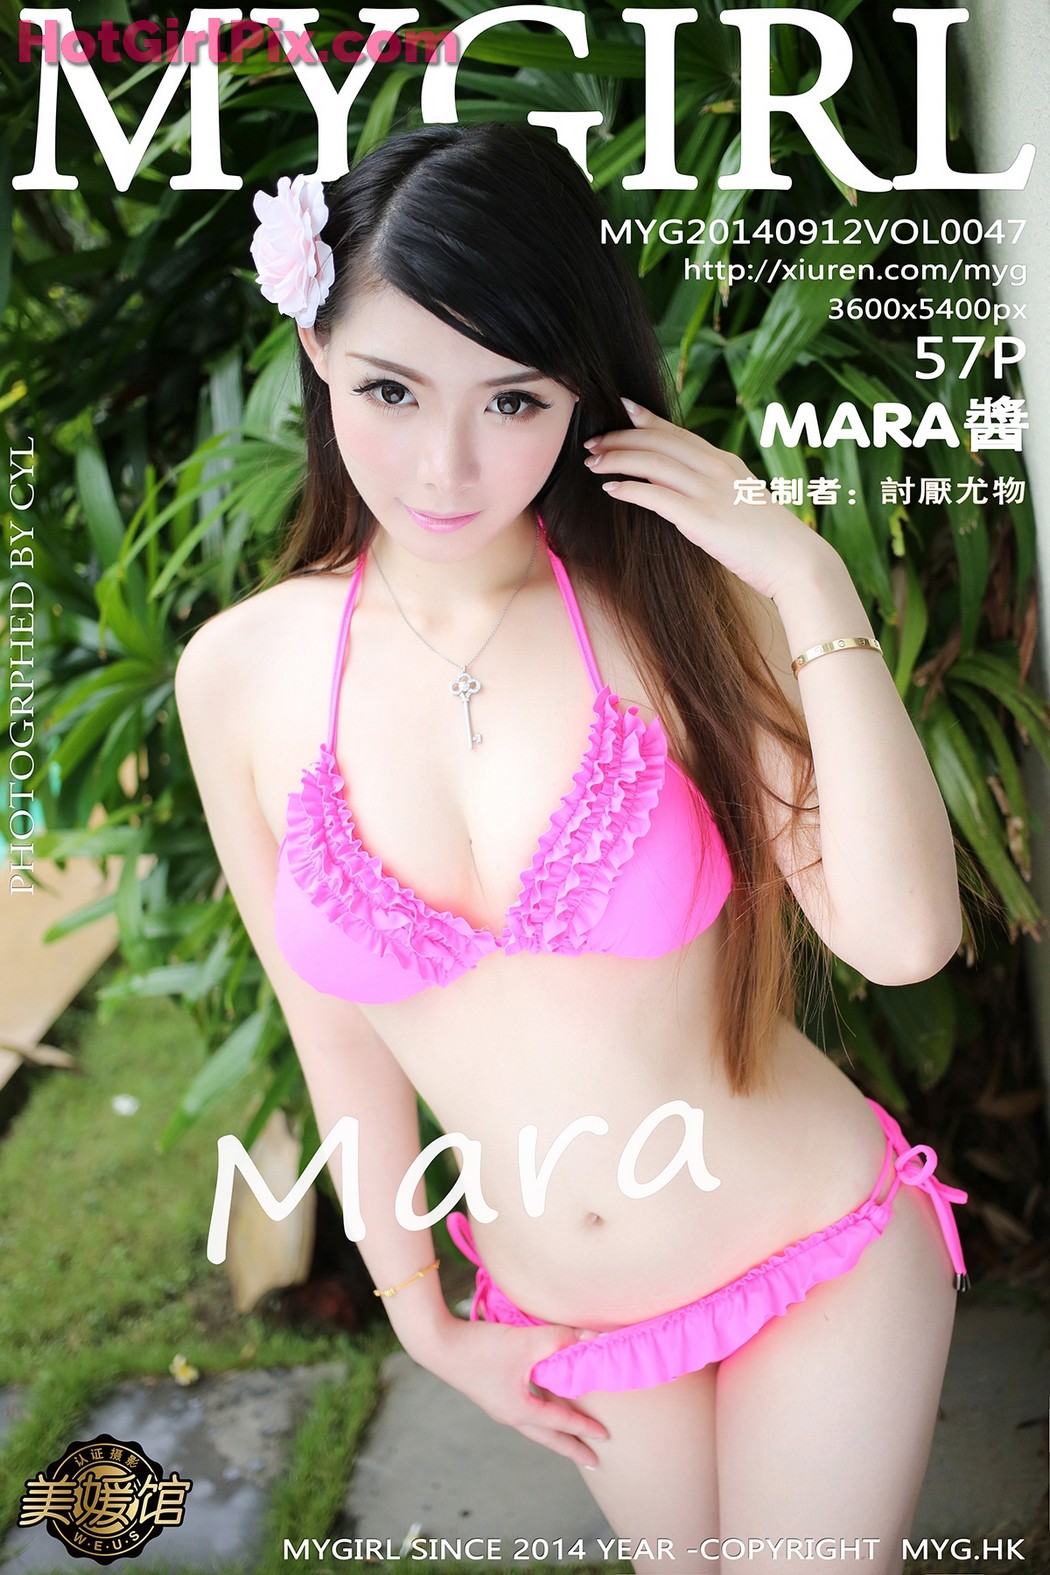 [MyGirl] Vol.047 MARA醬 Jiang Cover Photo